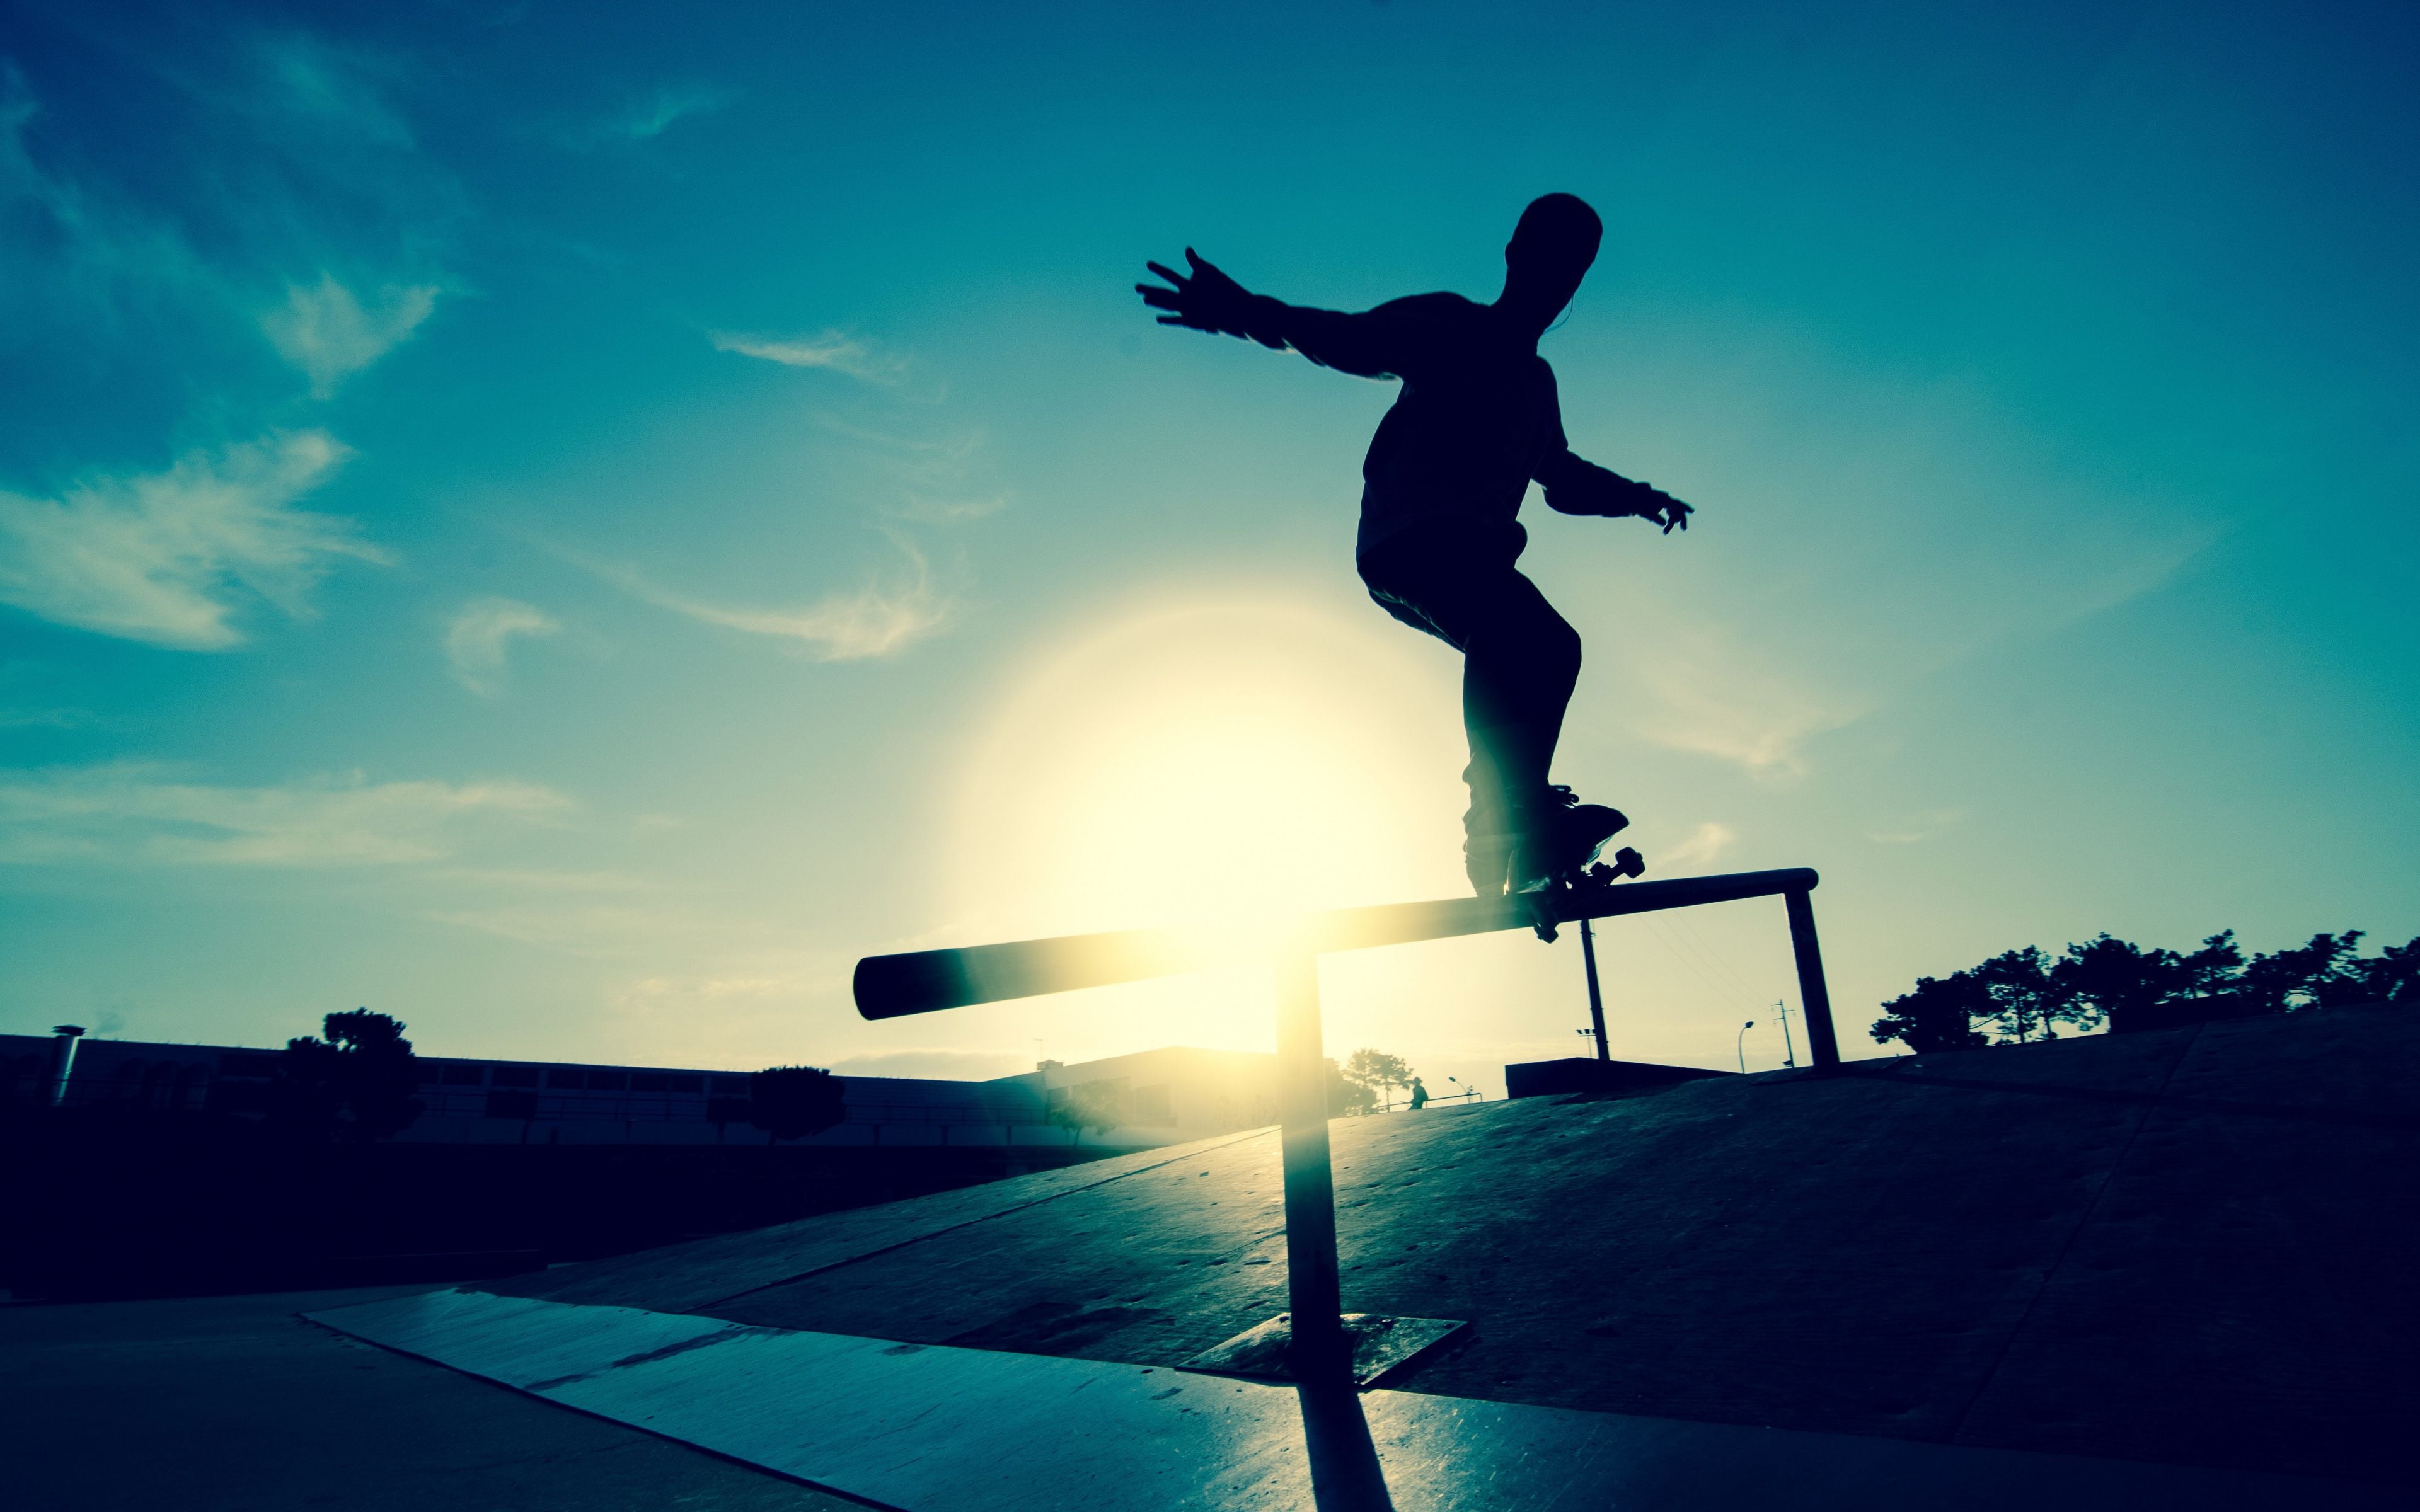 fantastici sfondi per skateboard,cielo,andare con lo skateboard,skateboard,nube,attrezzatura sportiva